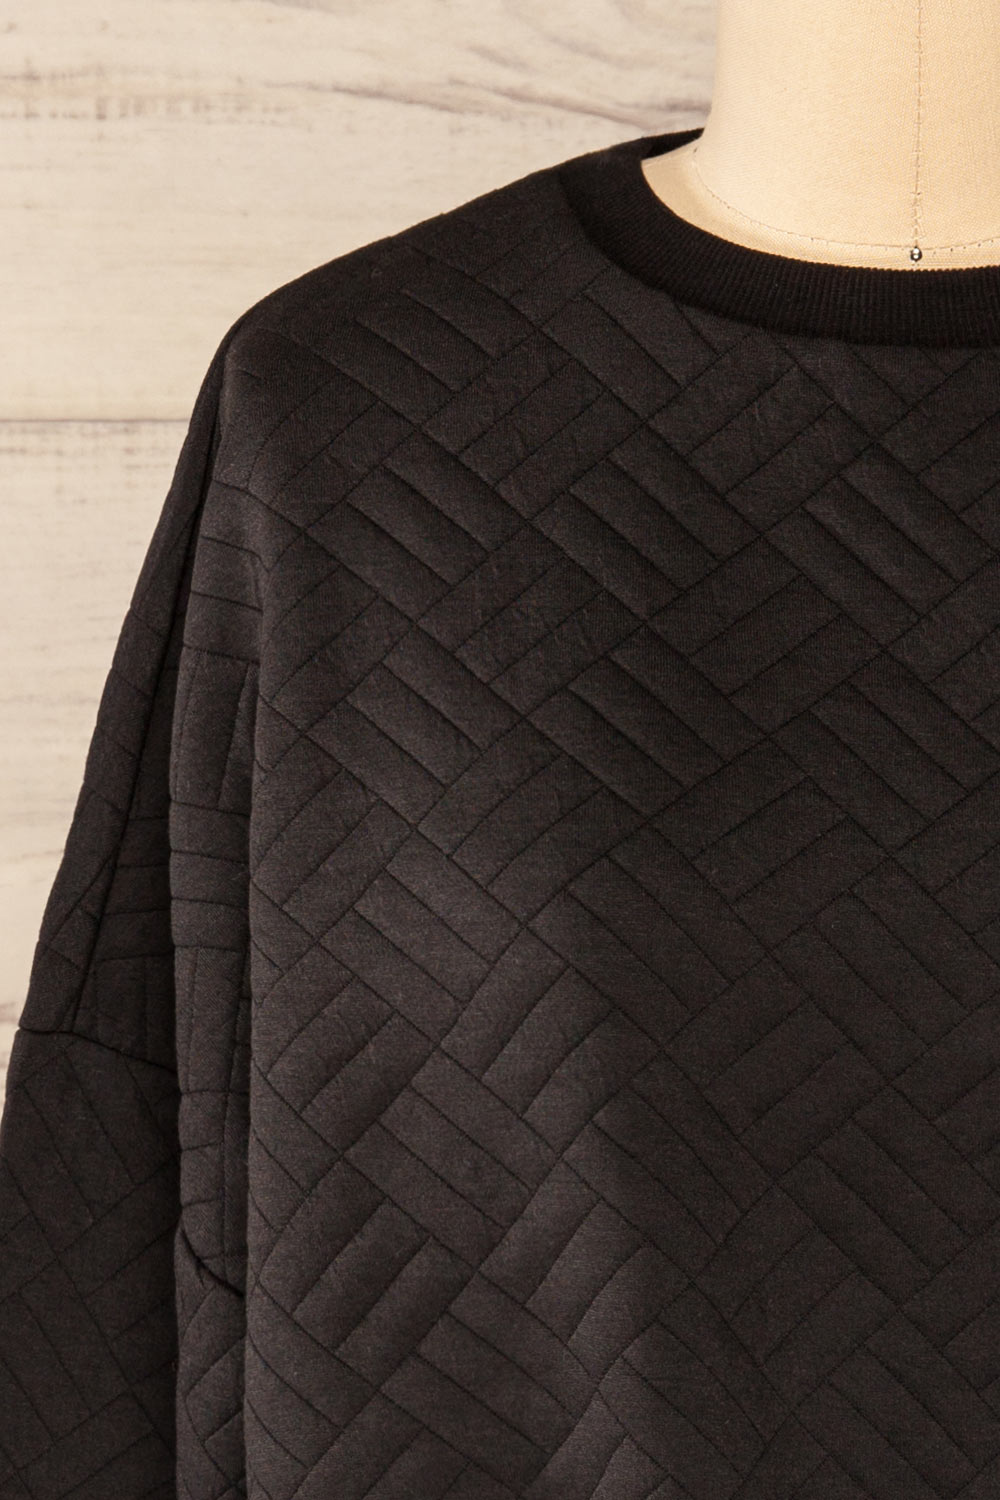 Paris Black Cropped Sweater w/ Drawstring | La petite garçonne front close-up